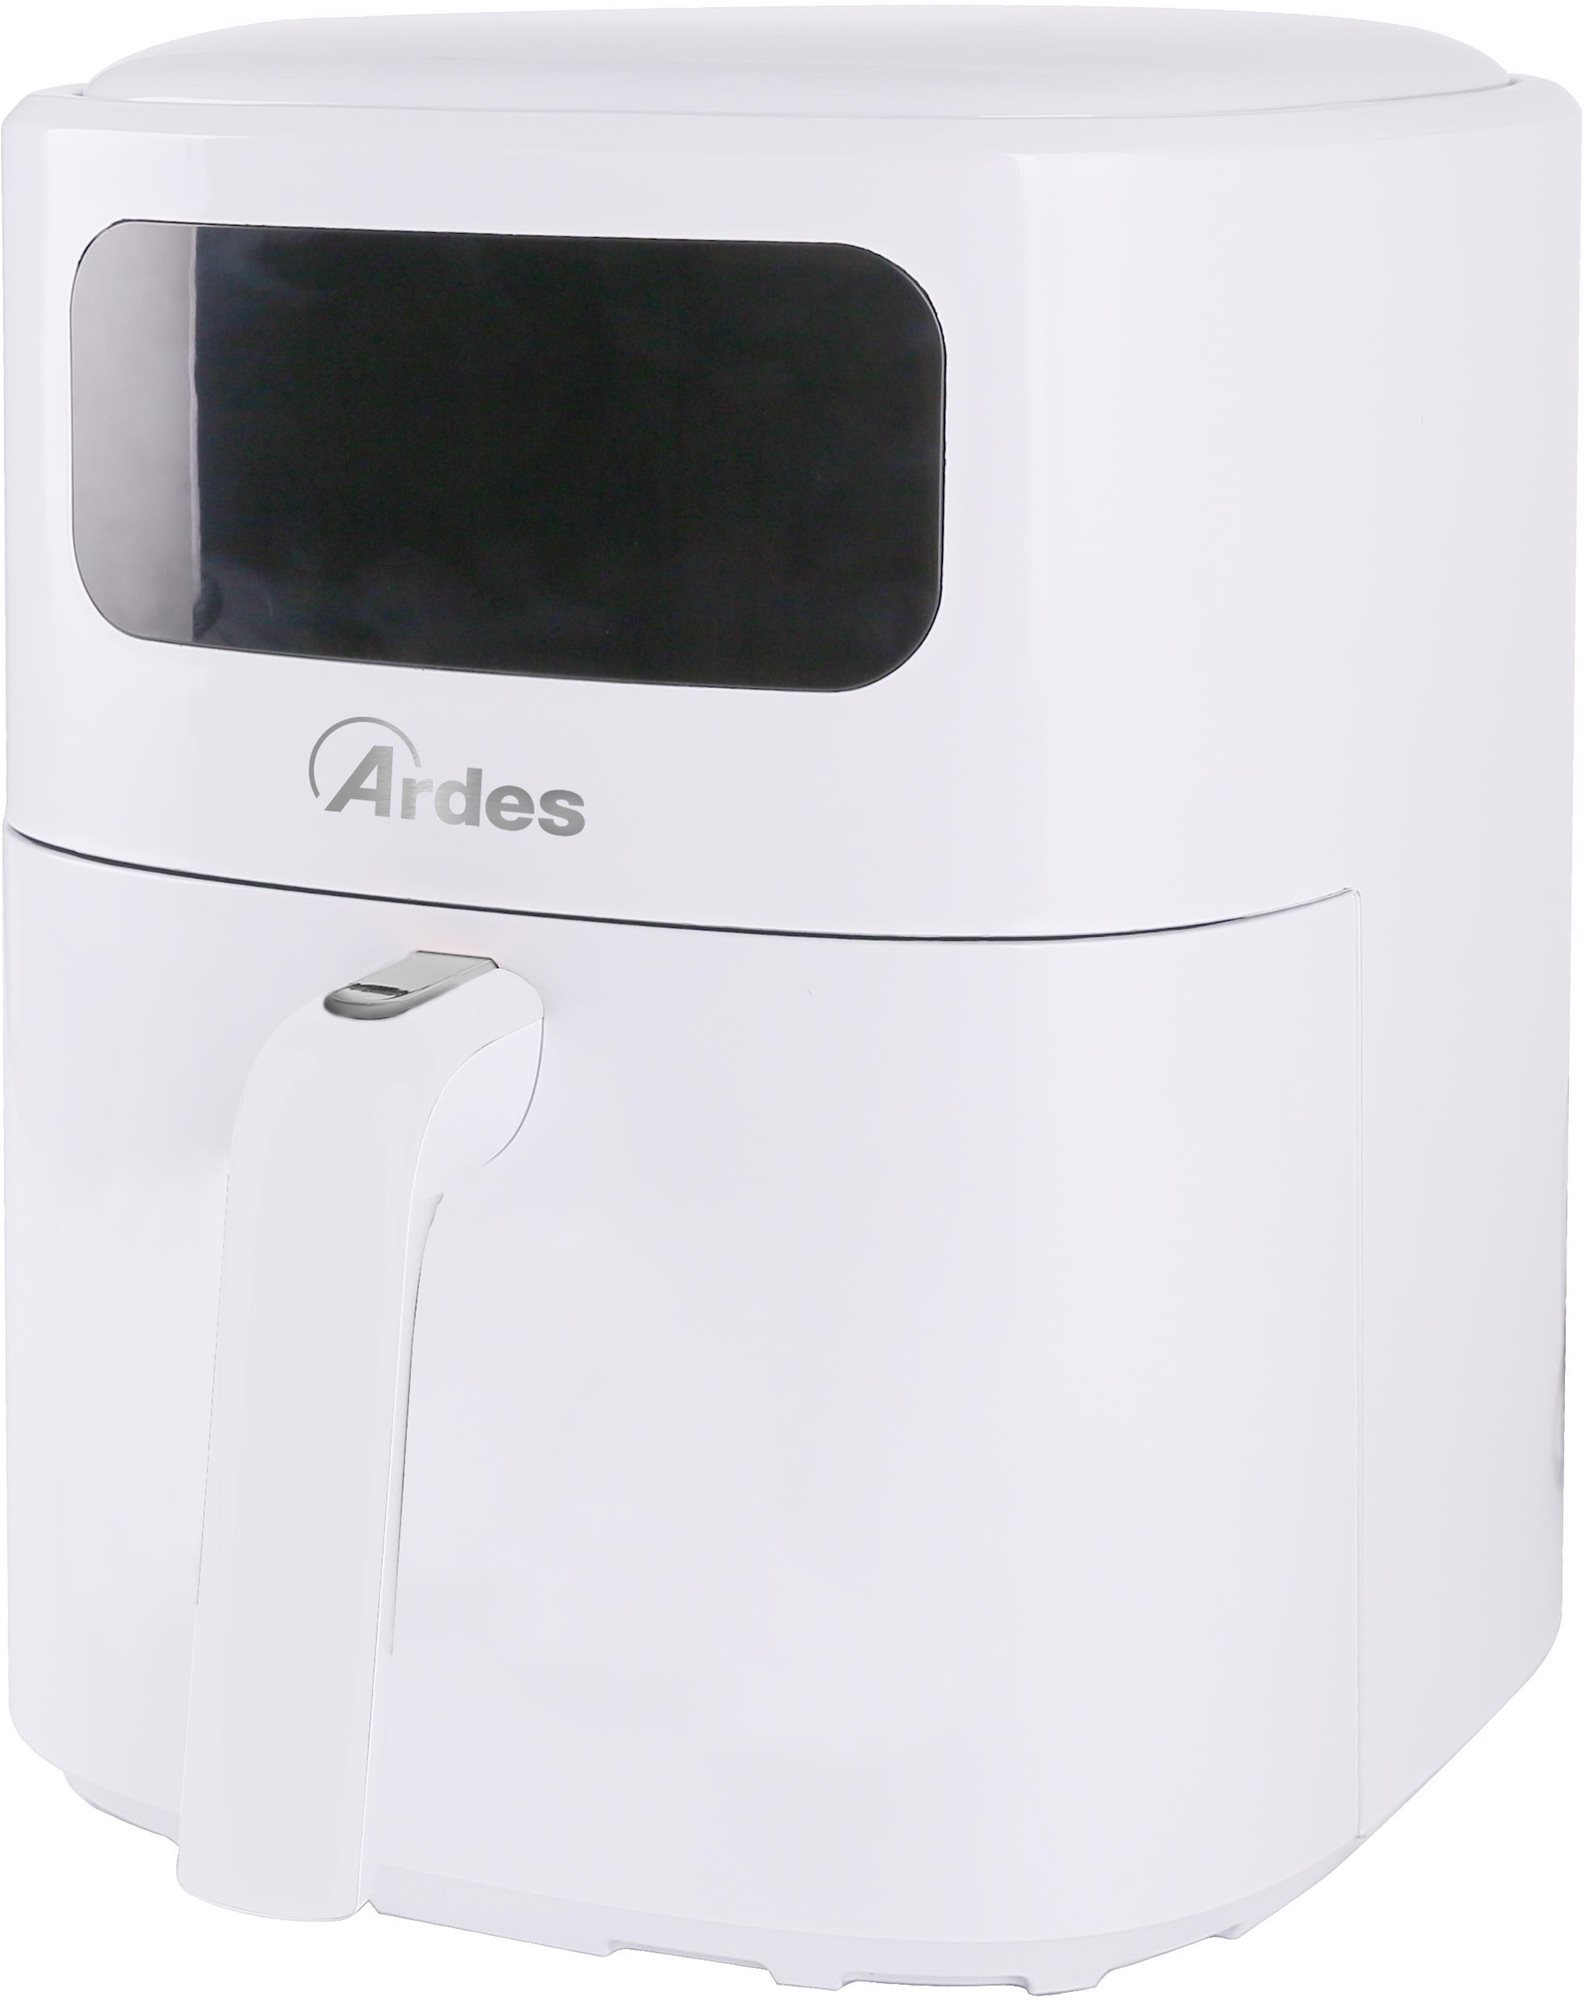 Airfryer Ardes A01